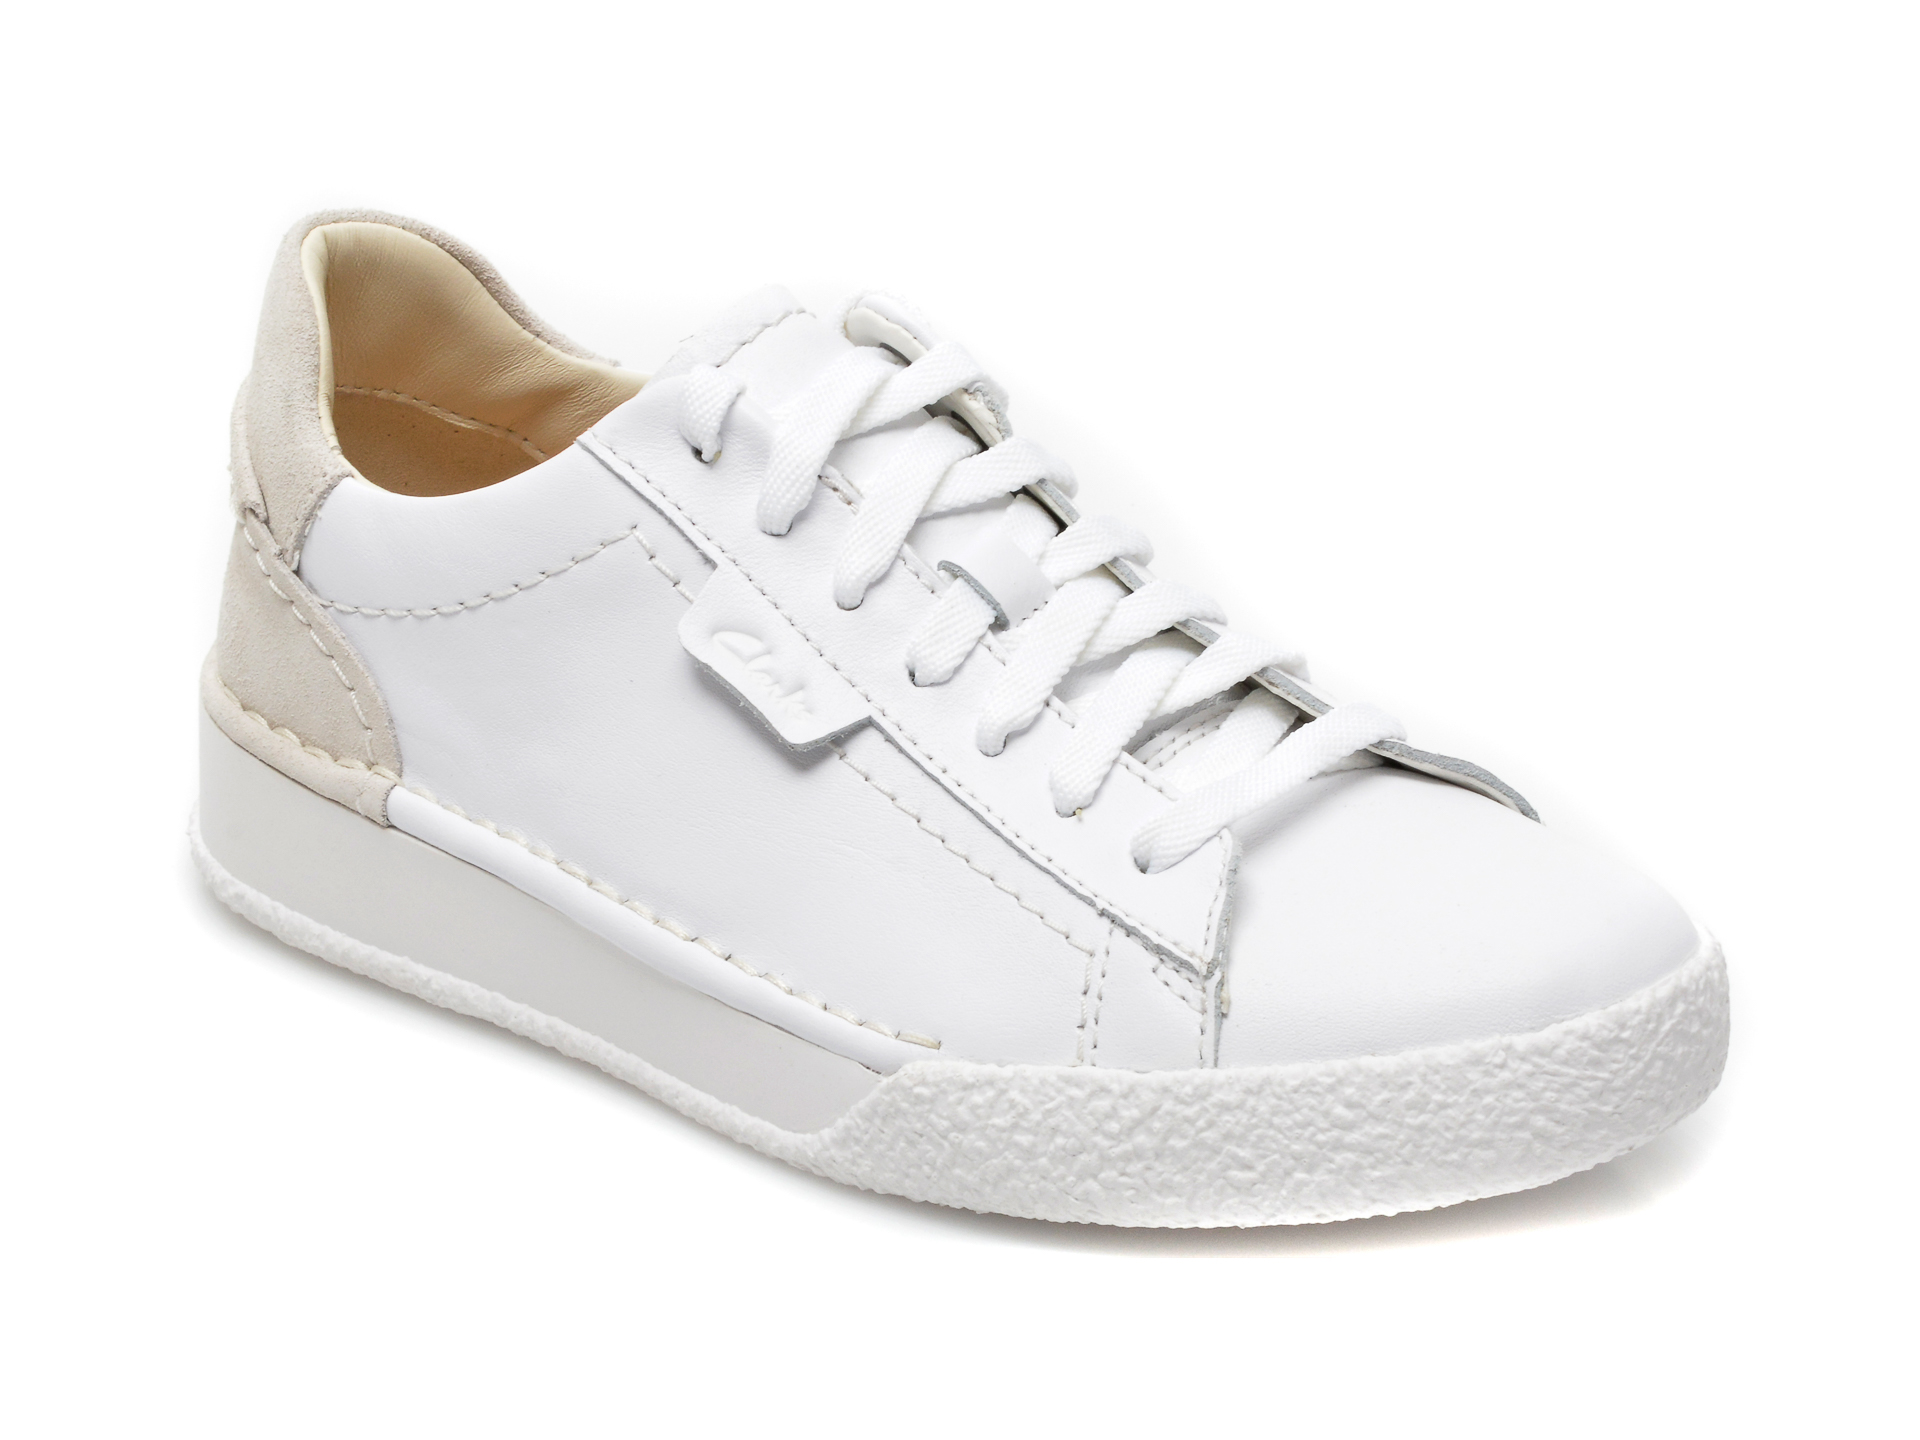 Pantofi sport CLARKS albi, CRAFT CUP LACE, din piele naturala Clarks imagine reduceri